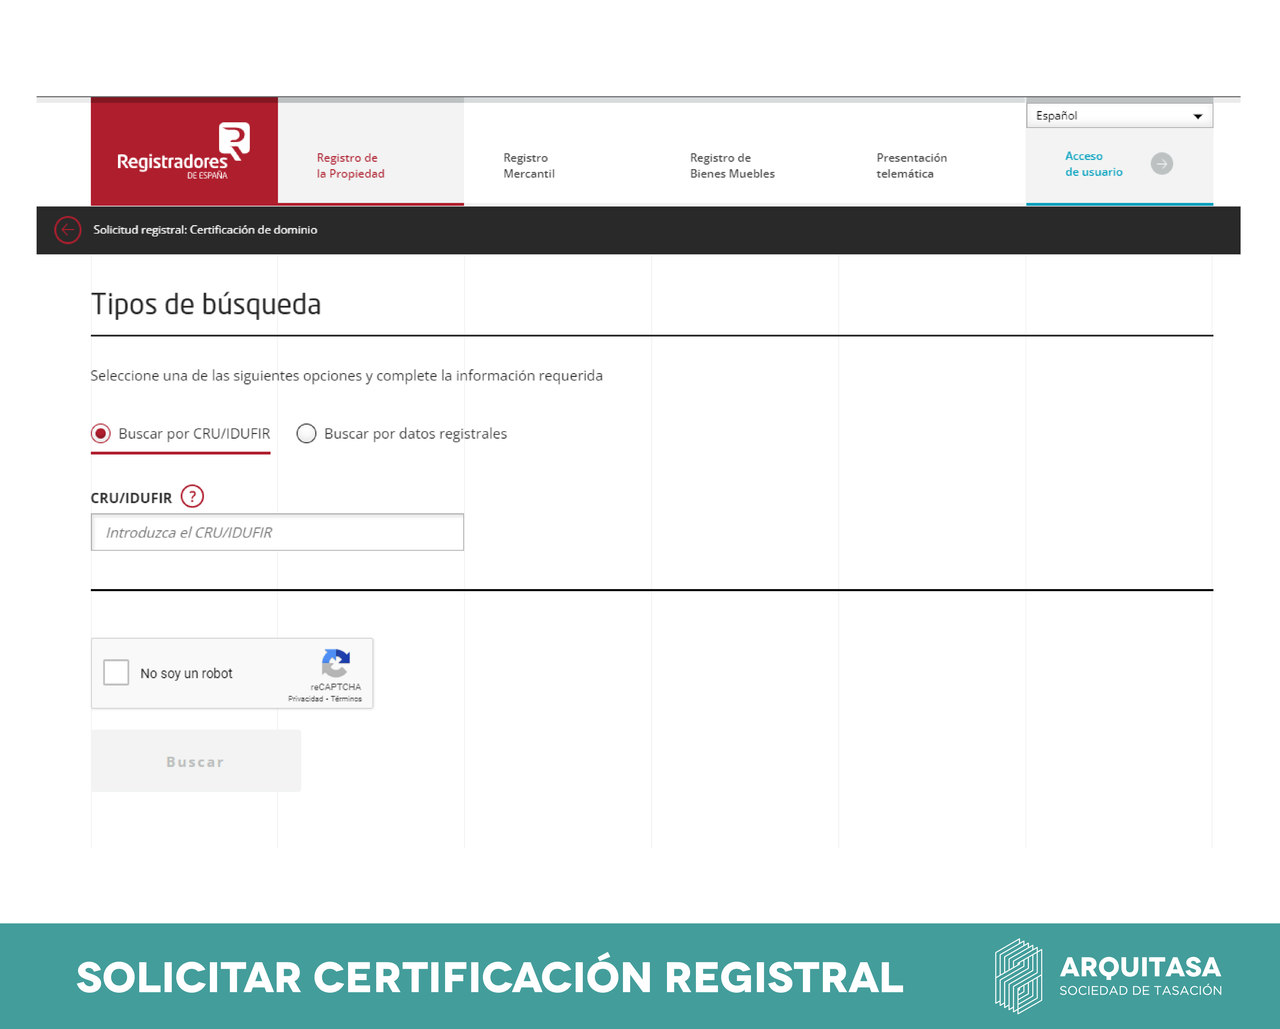 el certificado registral puede solicitarse en la web de registradores de españa